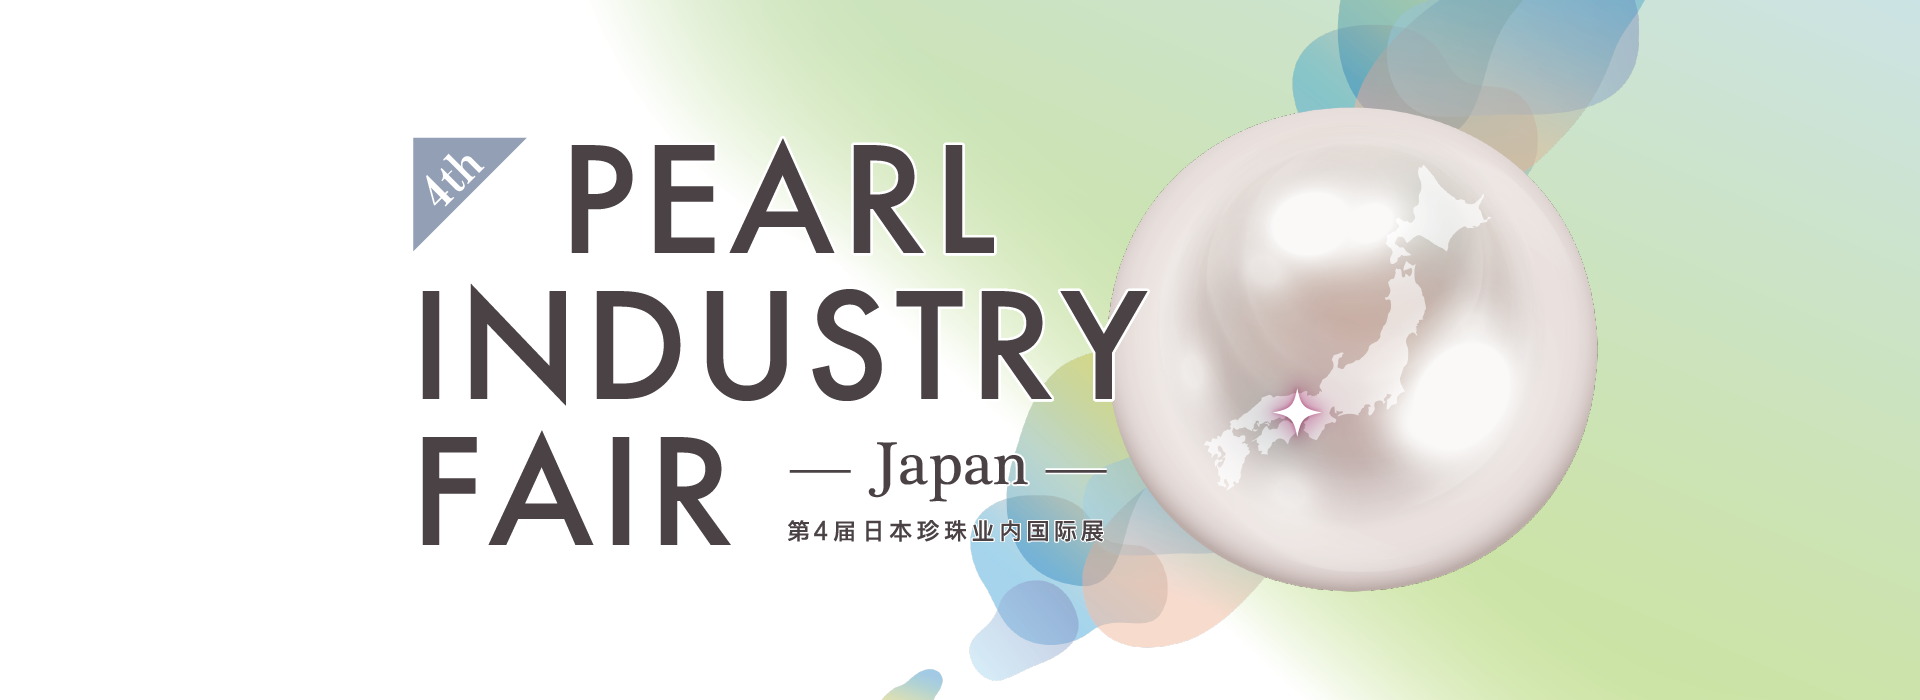 首届日本珍珠业内国际展